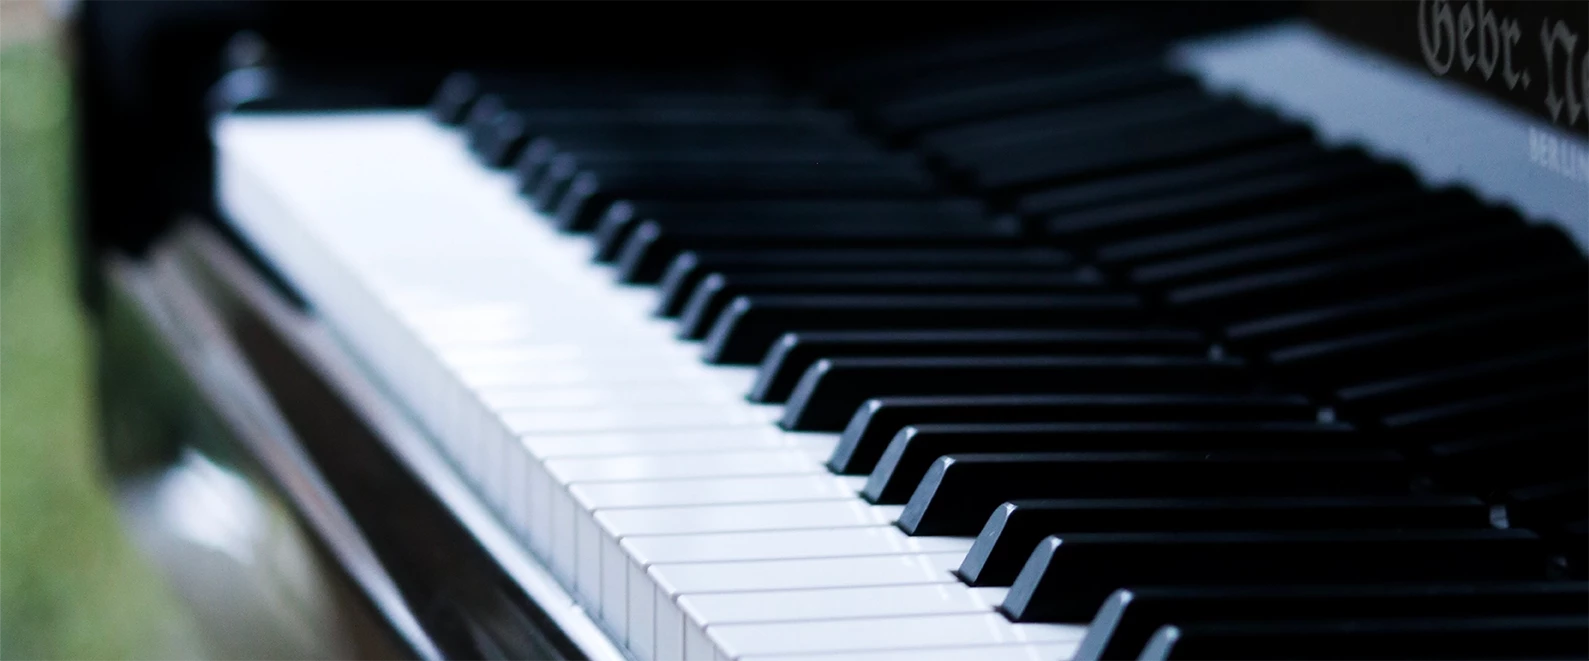 Une photo format paysage du clavier d'un piano noir et blanc